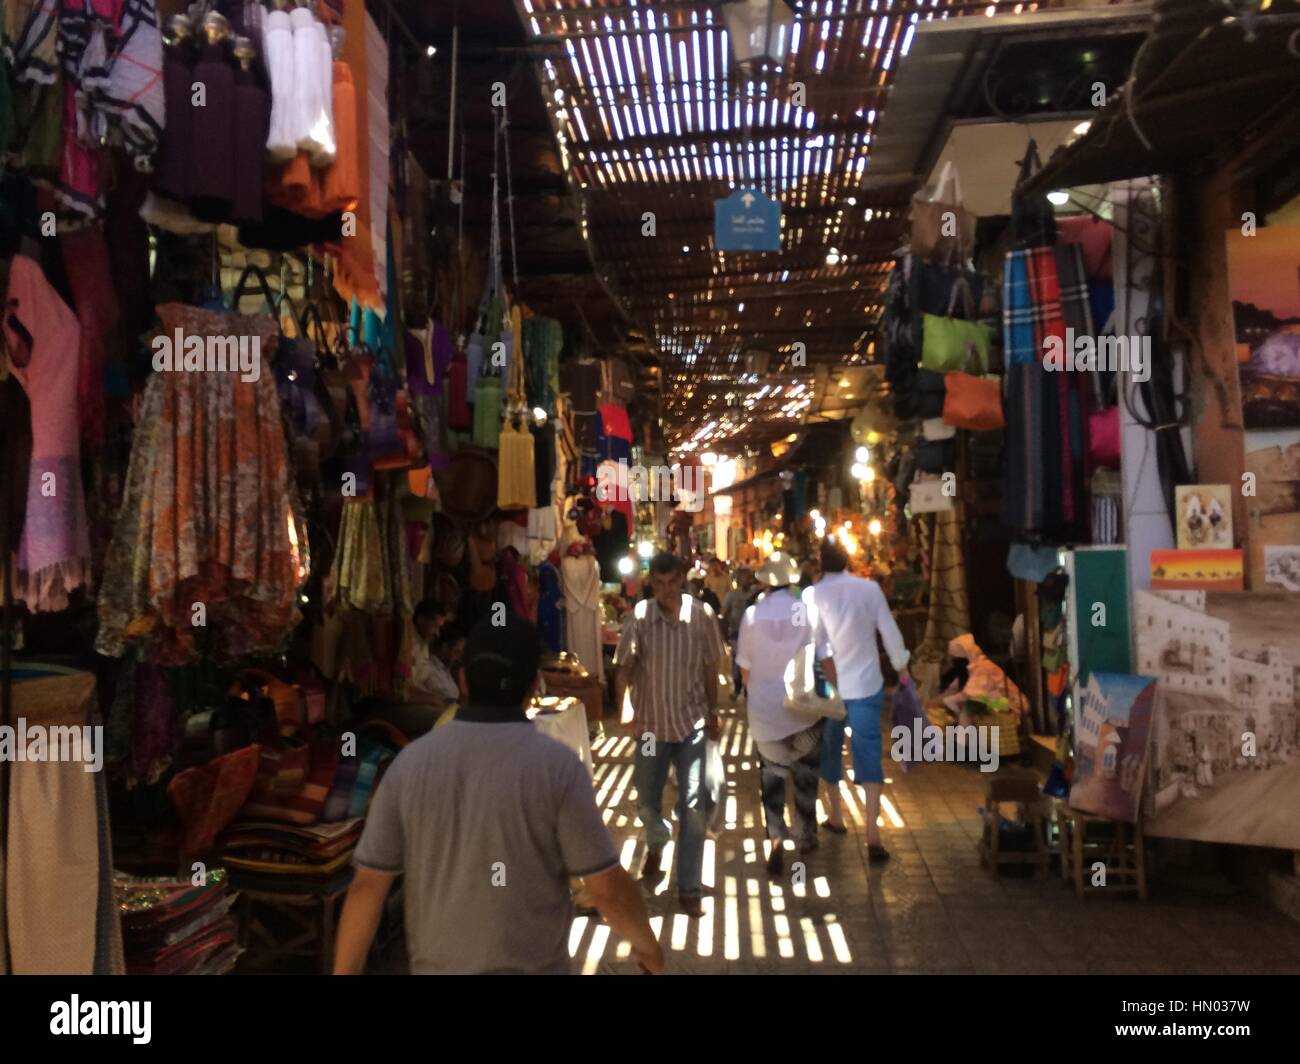 Mercato bazaar souk di Marrakech marocco storica della medina. Foto Stock